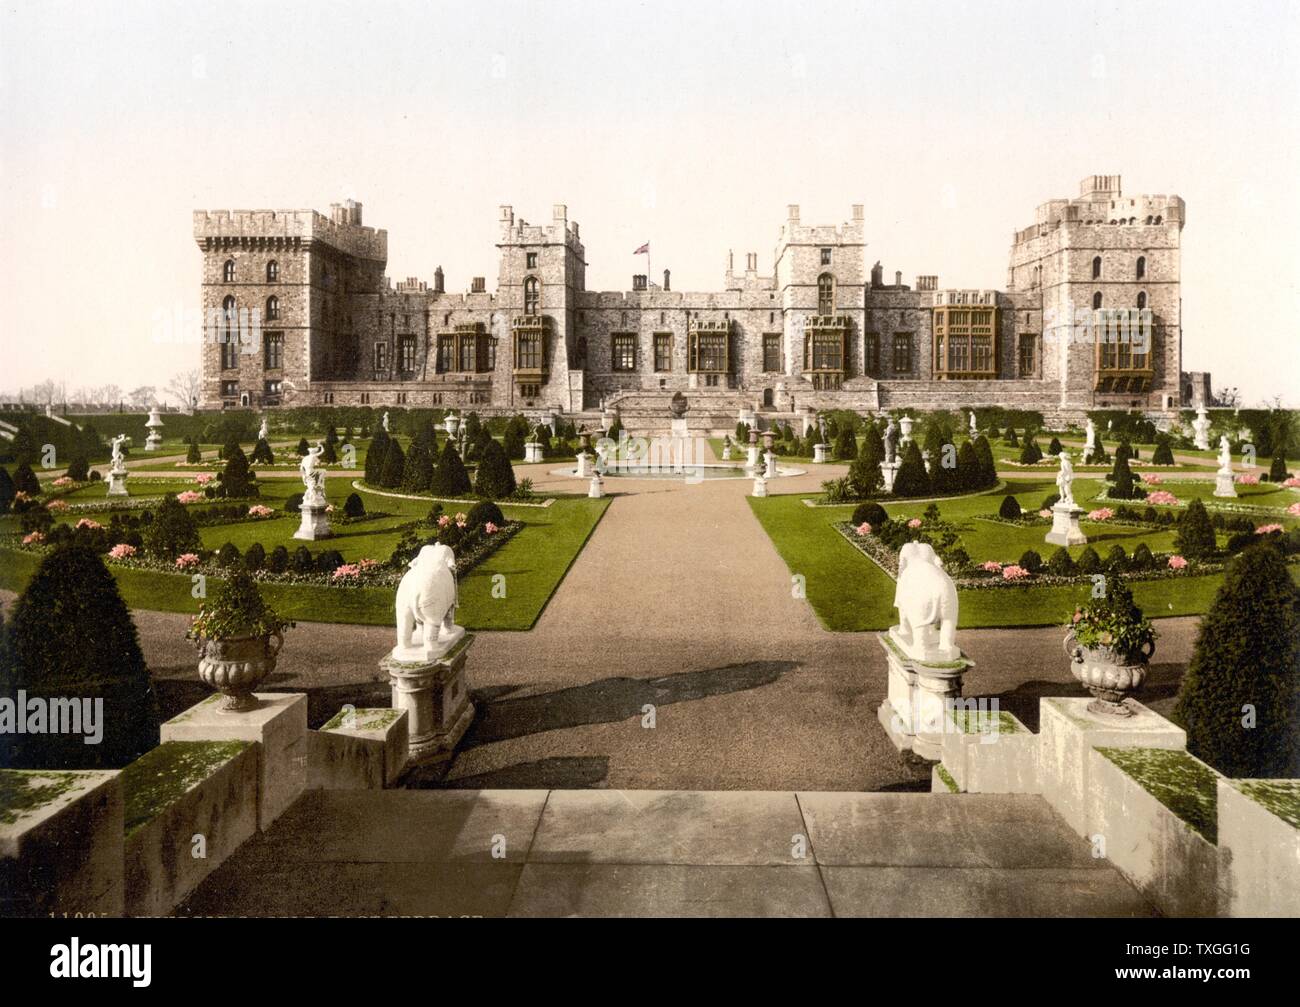 Oriente terrazza, Castello di Windsor in Inghilterra. Situato nel Berkshire, Windsor è una residenza reale e si distingue per la sua architettura e la sua lunga associazione con la famiglia reale. Più di 500 persone che vivono e lavorano qui. Foto Stock